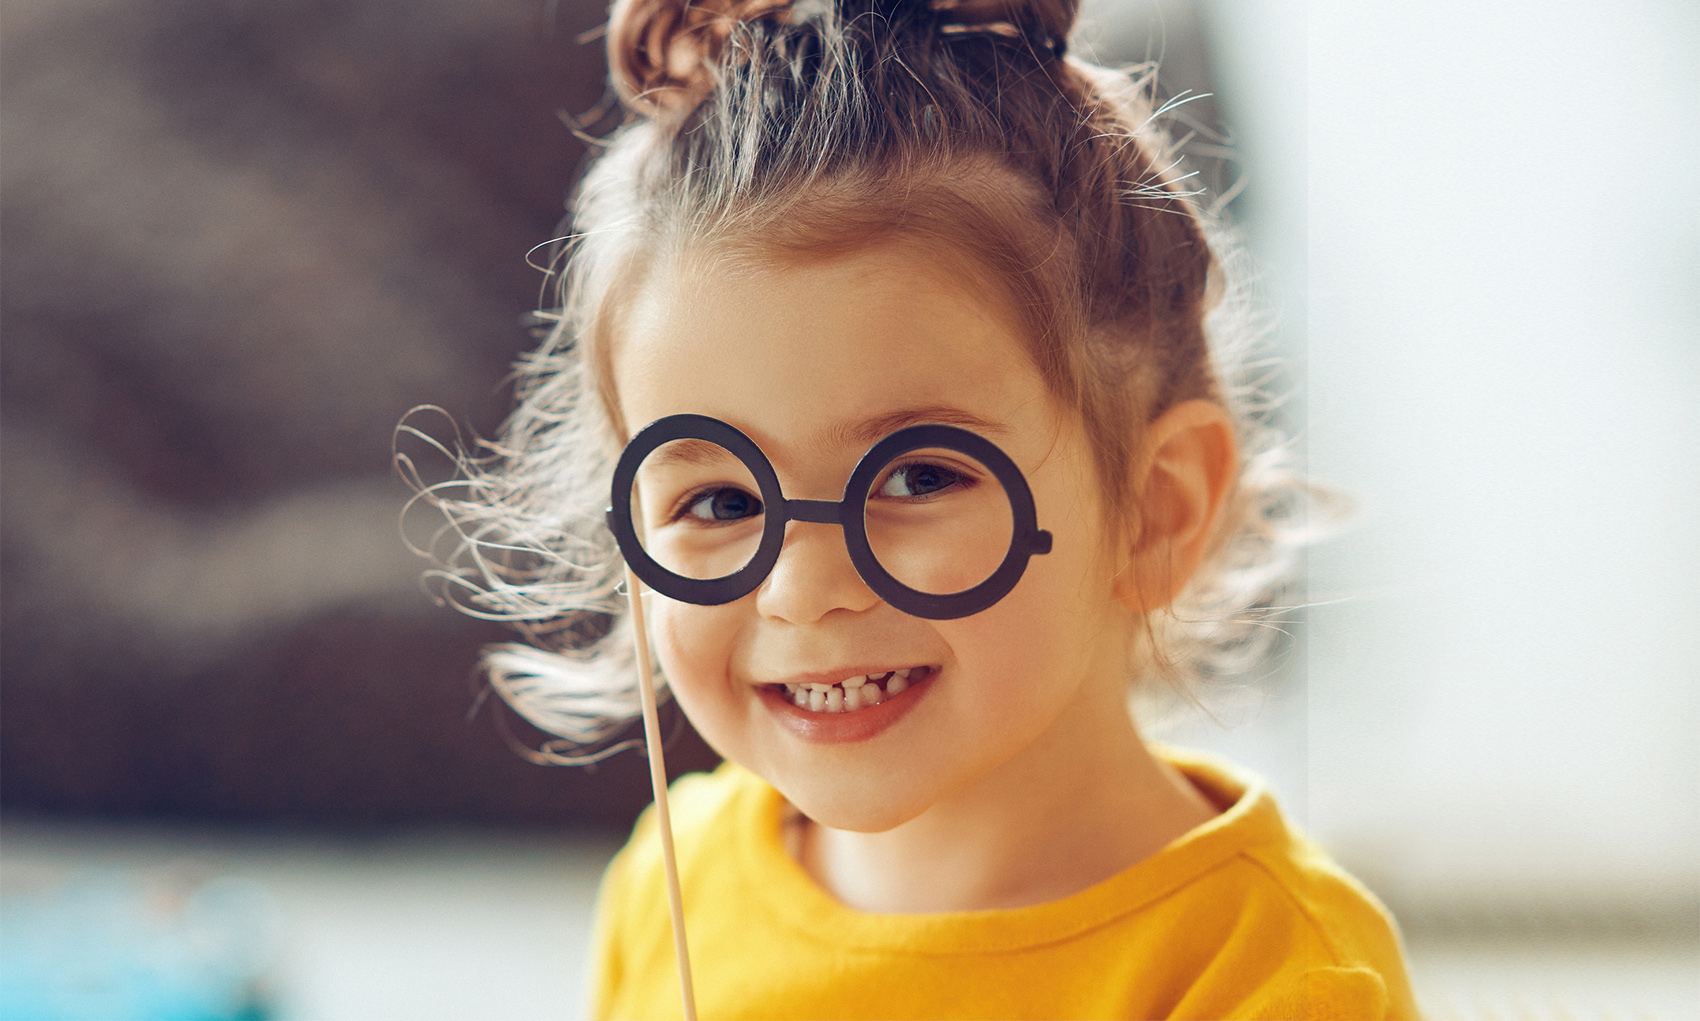 Jak przekonać dziecko do noszenia okularów?